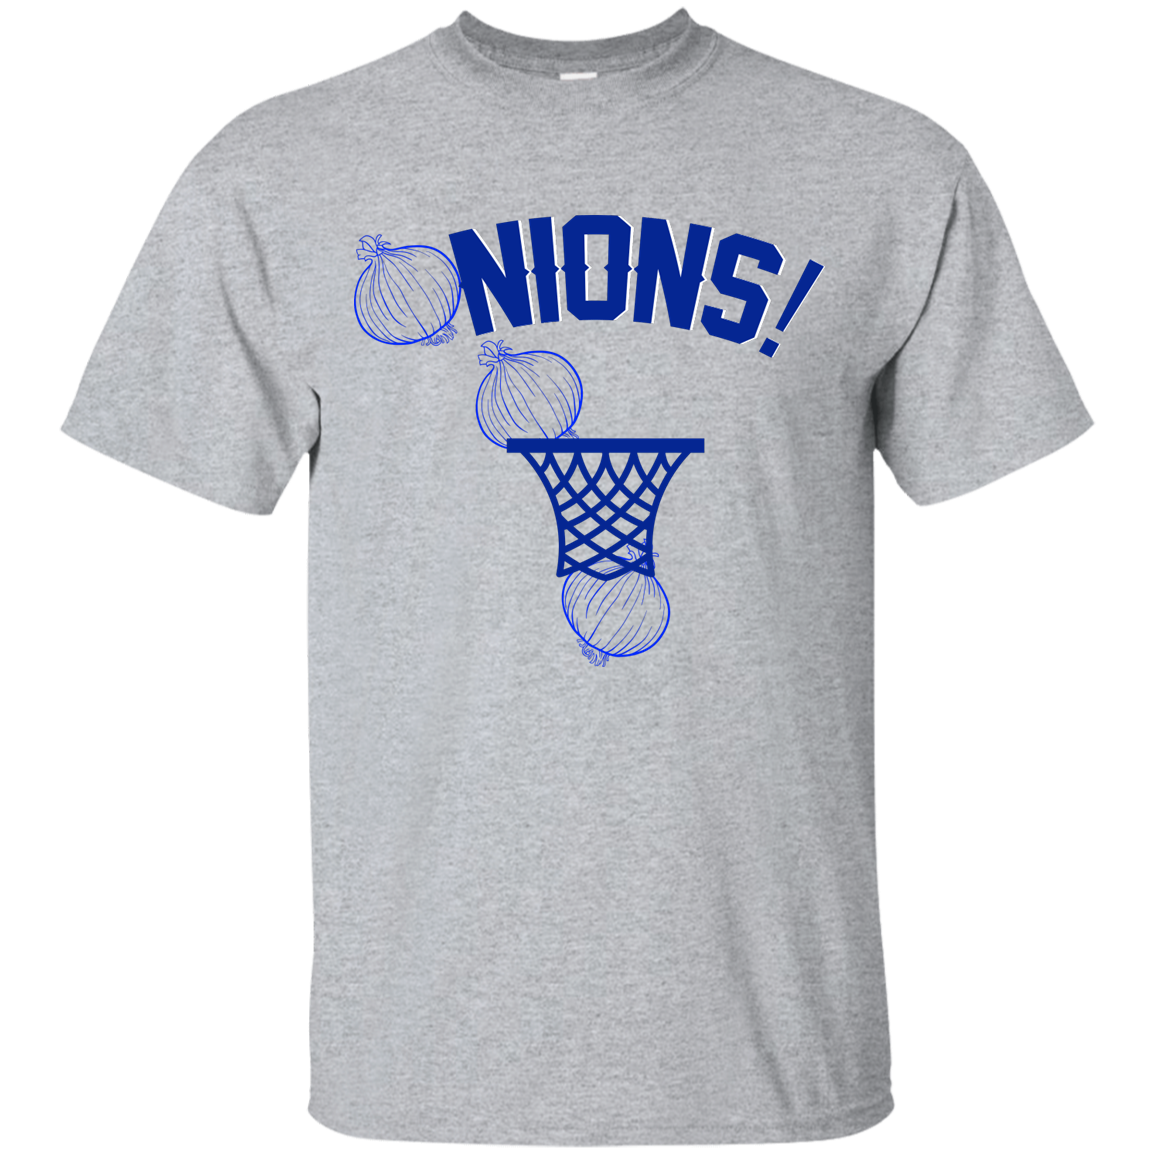 Onions Basketball shirt, sweater, tank